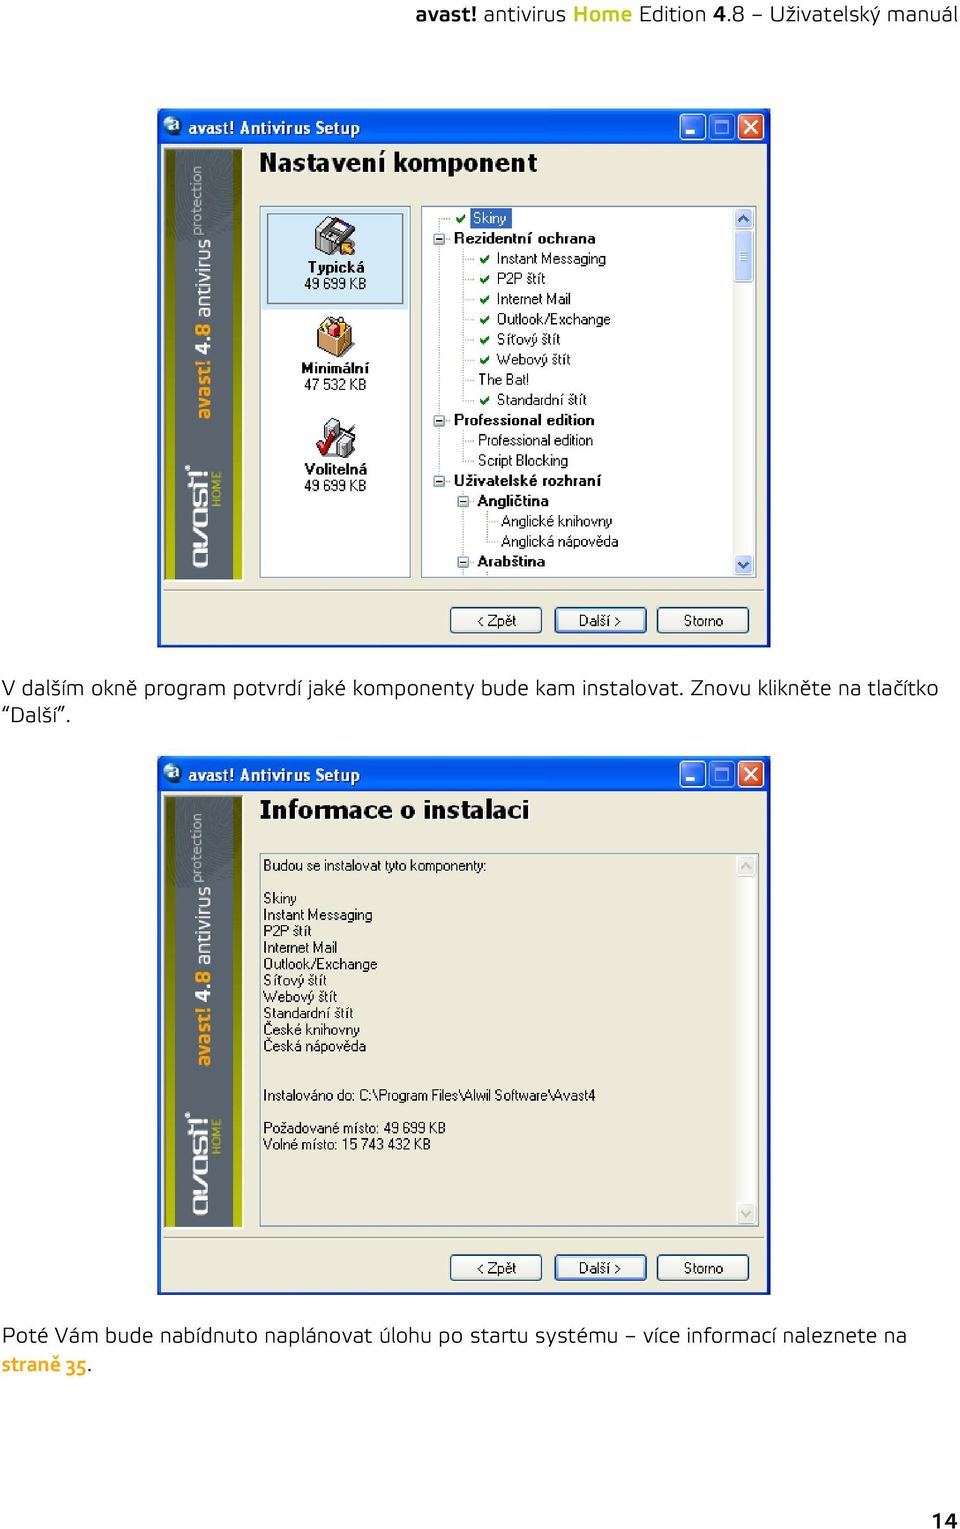 avast! antivirus Home Edition 4.8 Uživatelský manuál avast! antivirus Home  Edition 4.8 Uživatelský manuál - PDF Stažení zdarma